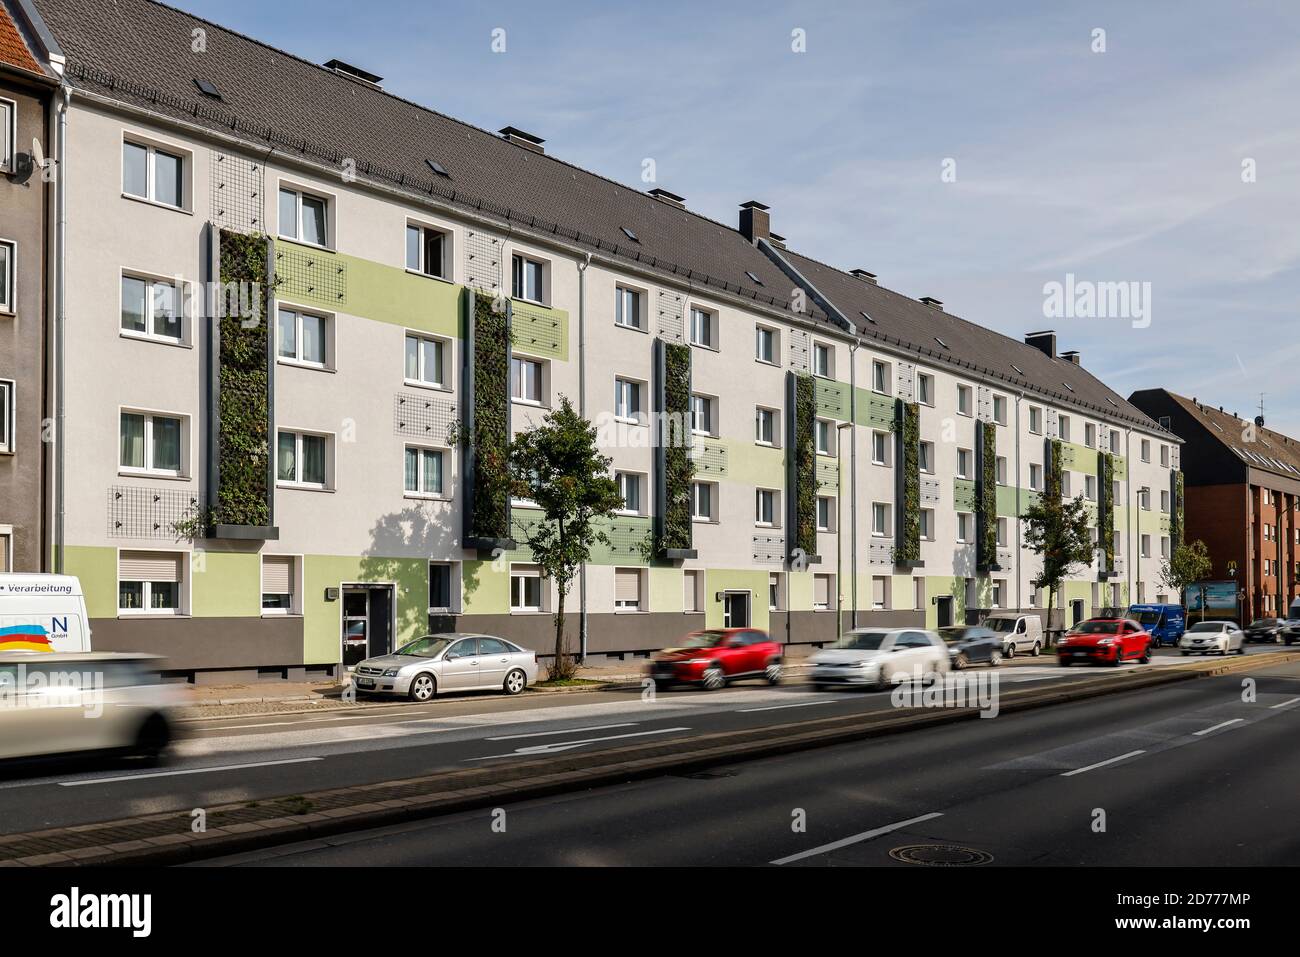 Essen, distretto della Ruhr, Renania Settentrionale-Vestfalia, Germania - facciata a parete che si verdi in case appena riorganizzate dell'Allbau Wohnungsbaugesellschaft Foto Stock